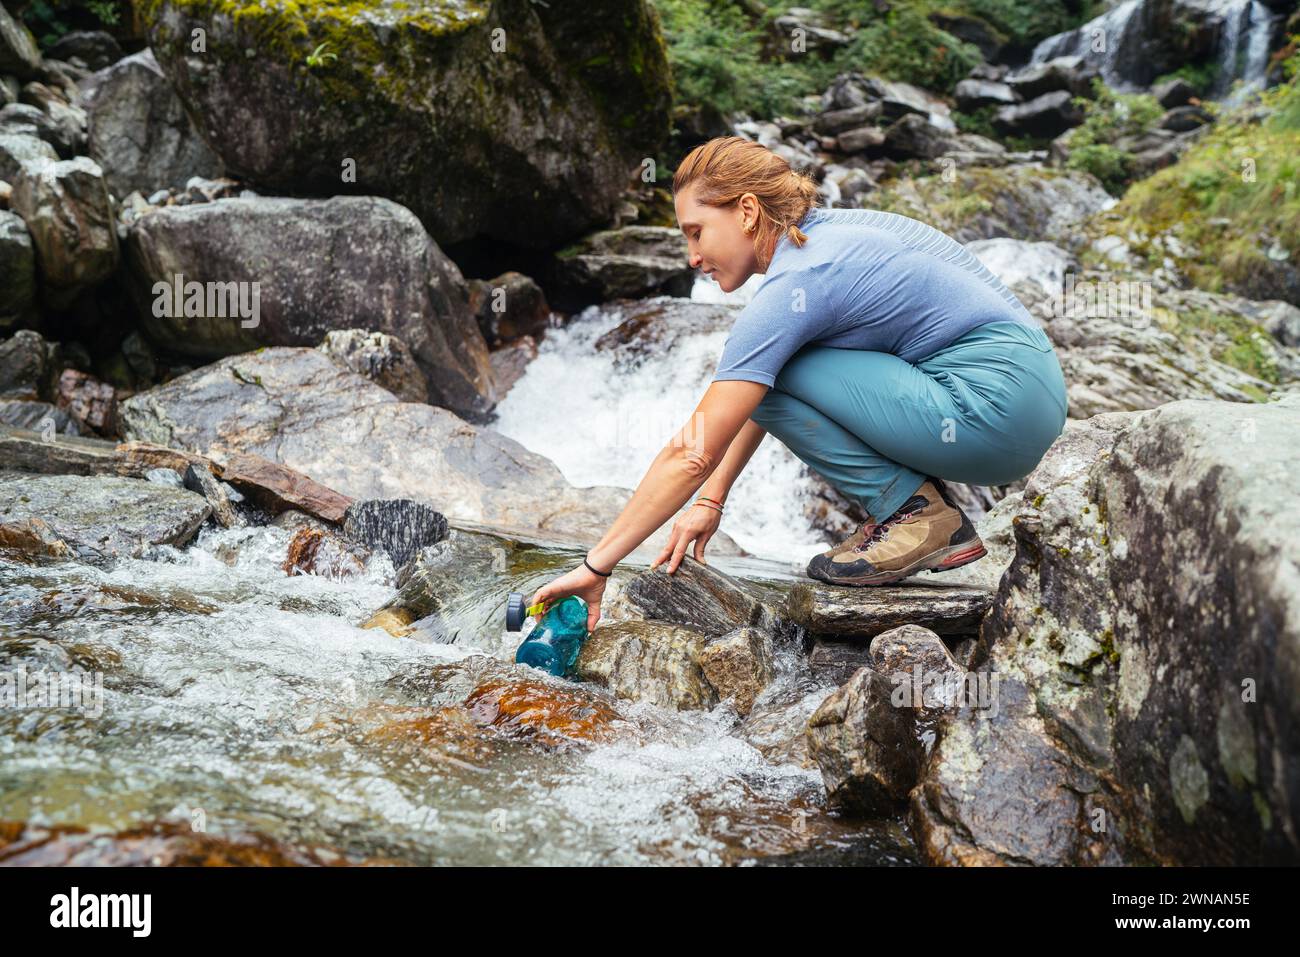 Jeune femme trekker traversant la rivière de montagne et remplissant l'eau douce ip dans la bouteille touristique pendant le trek du parc national Makalu Barun au Népal. Montagne h Banque D'Images